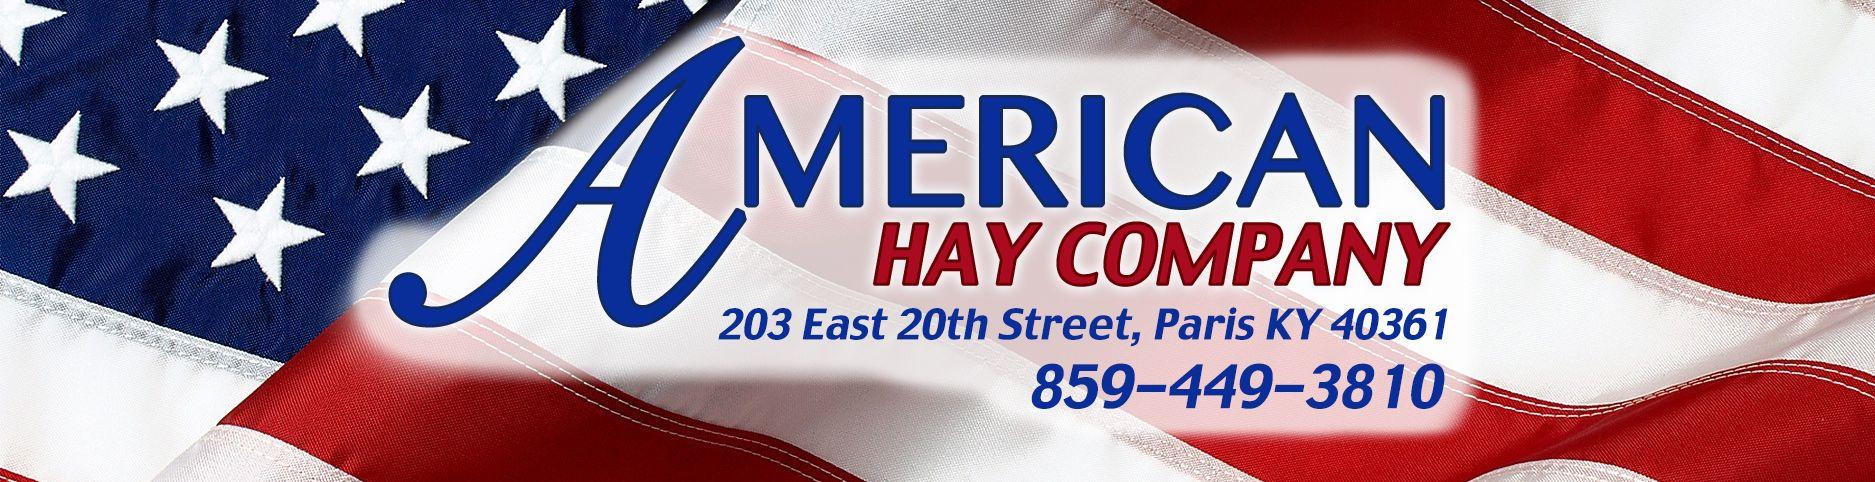 Hay Company Logo - American Hay Company